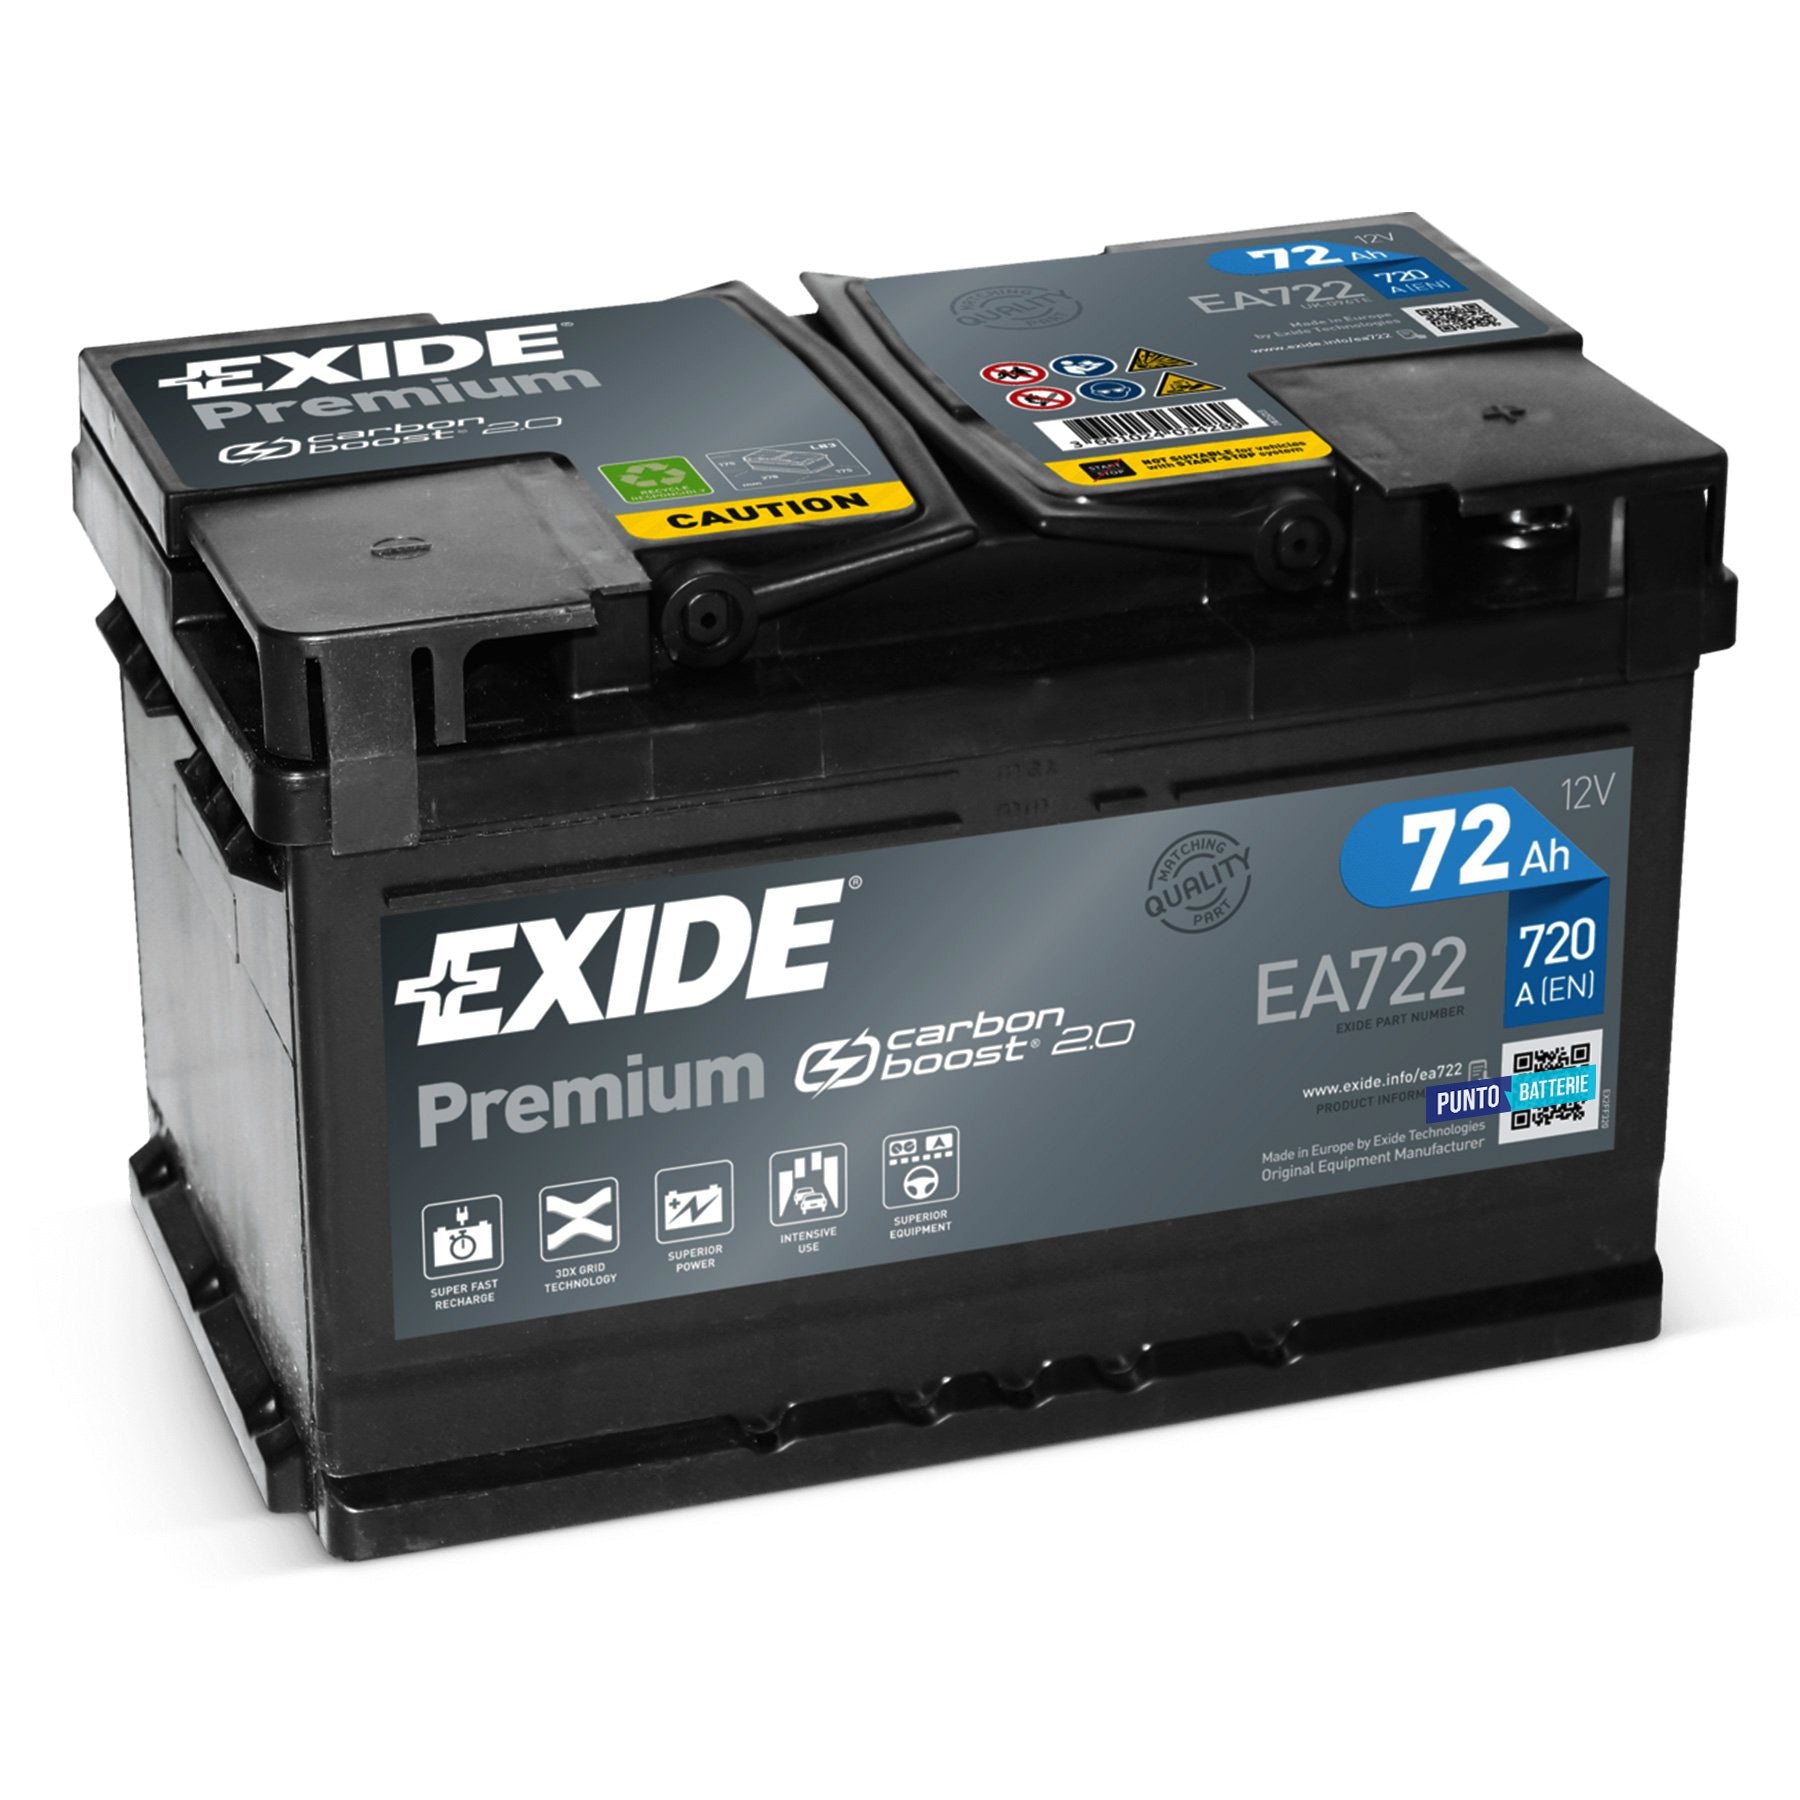 Batteria originale Exide Premium EA722, dimensioni 278 x 175 x 175, polo positivo a destra, 12 volt, 72 amperora, 720 ampere. Batteria per auto e veicoli leggeri.